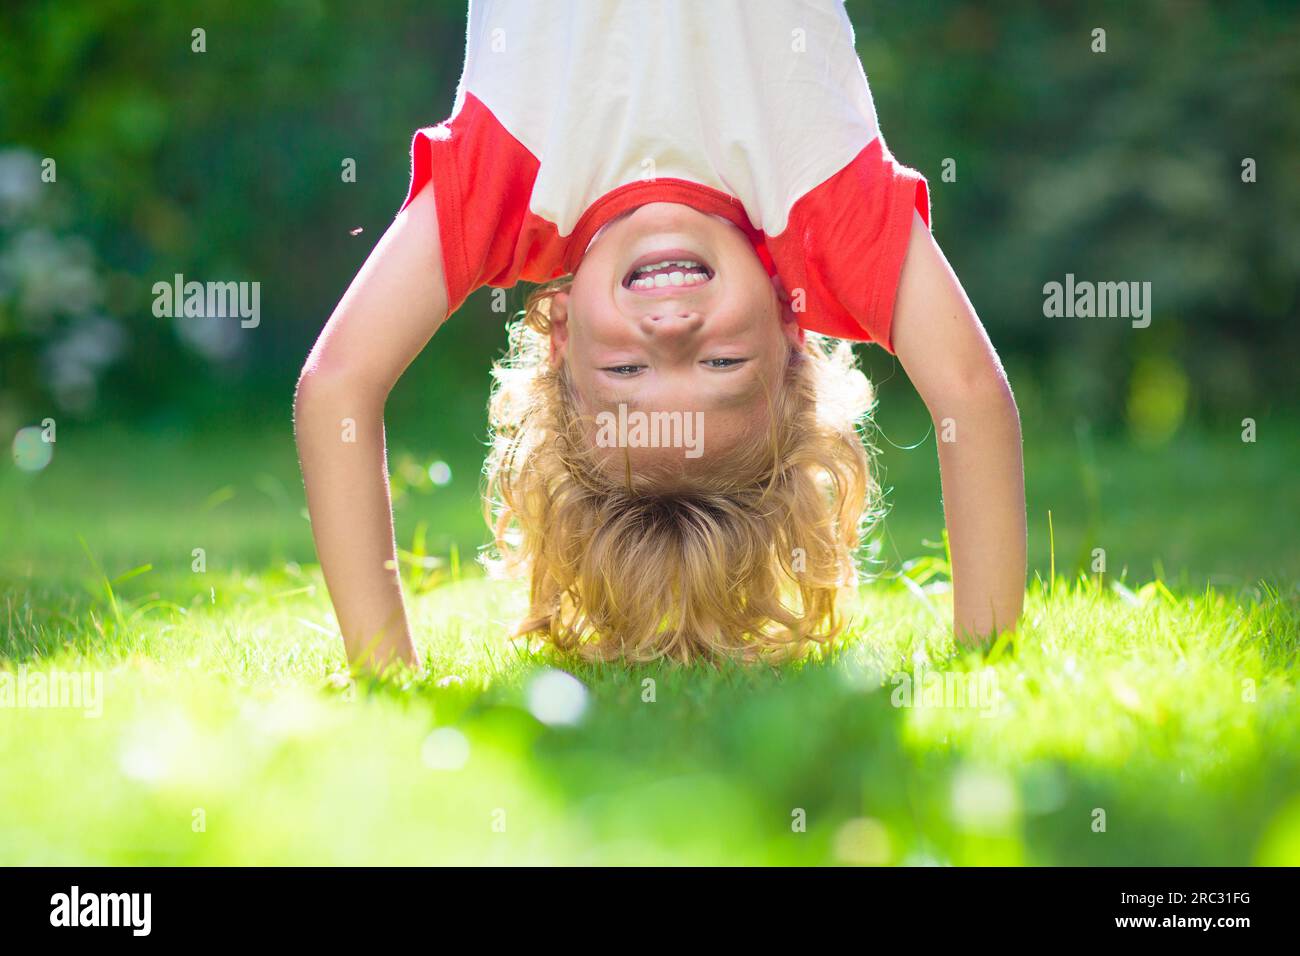 Der kleine Junge hängt kopfüber. Handstand-Übungen für kleine Kinder. Aktives Kind spielt auf sonnigen Gartenrasen. Sommerspaß. Kinder spielen draußen. Stockfoto